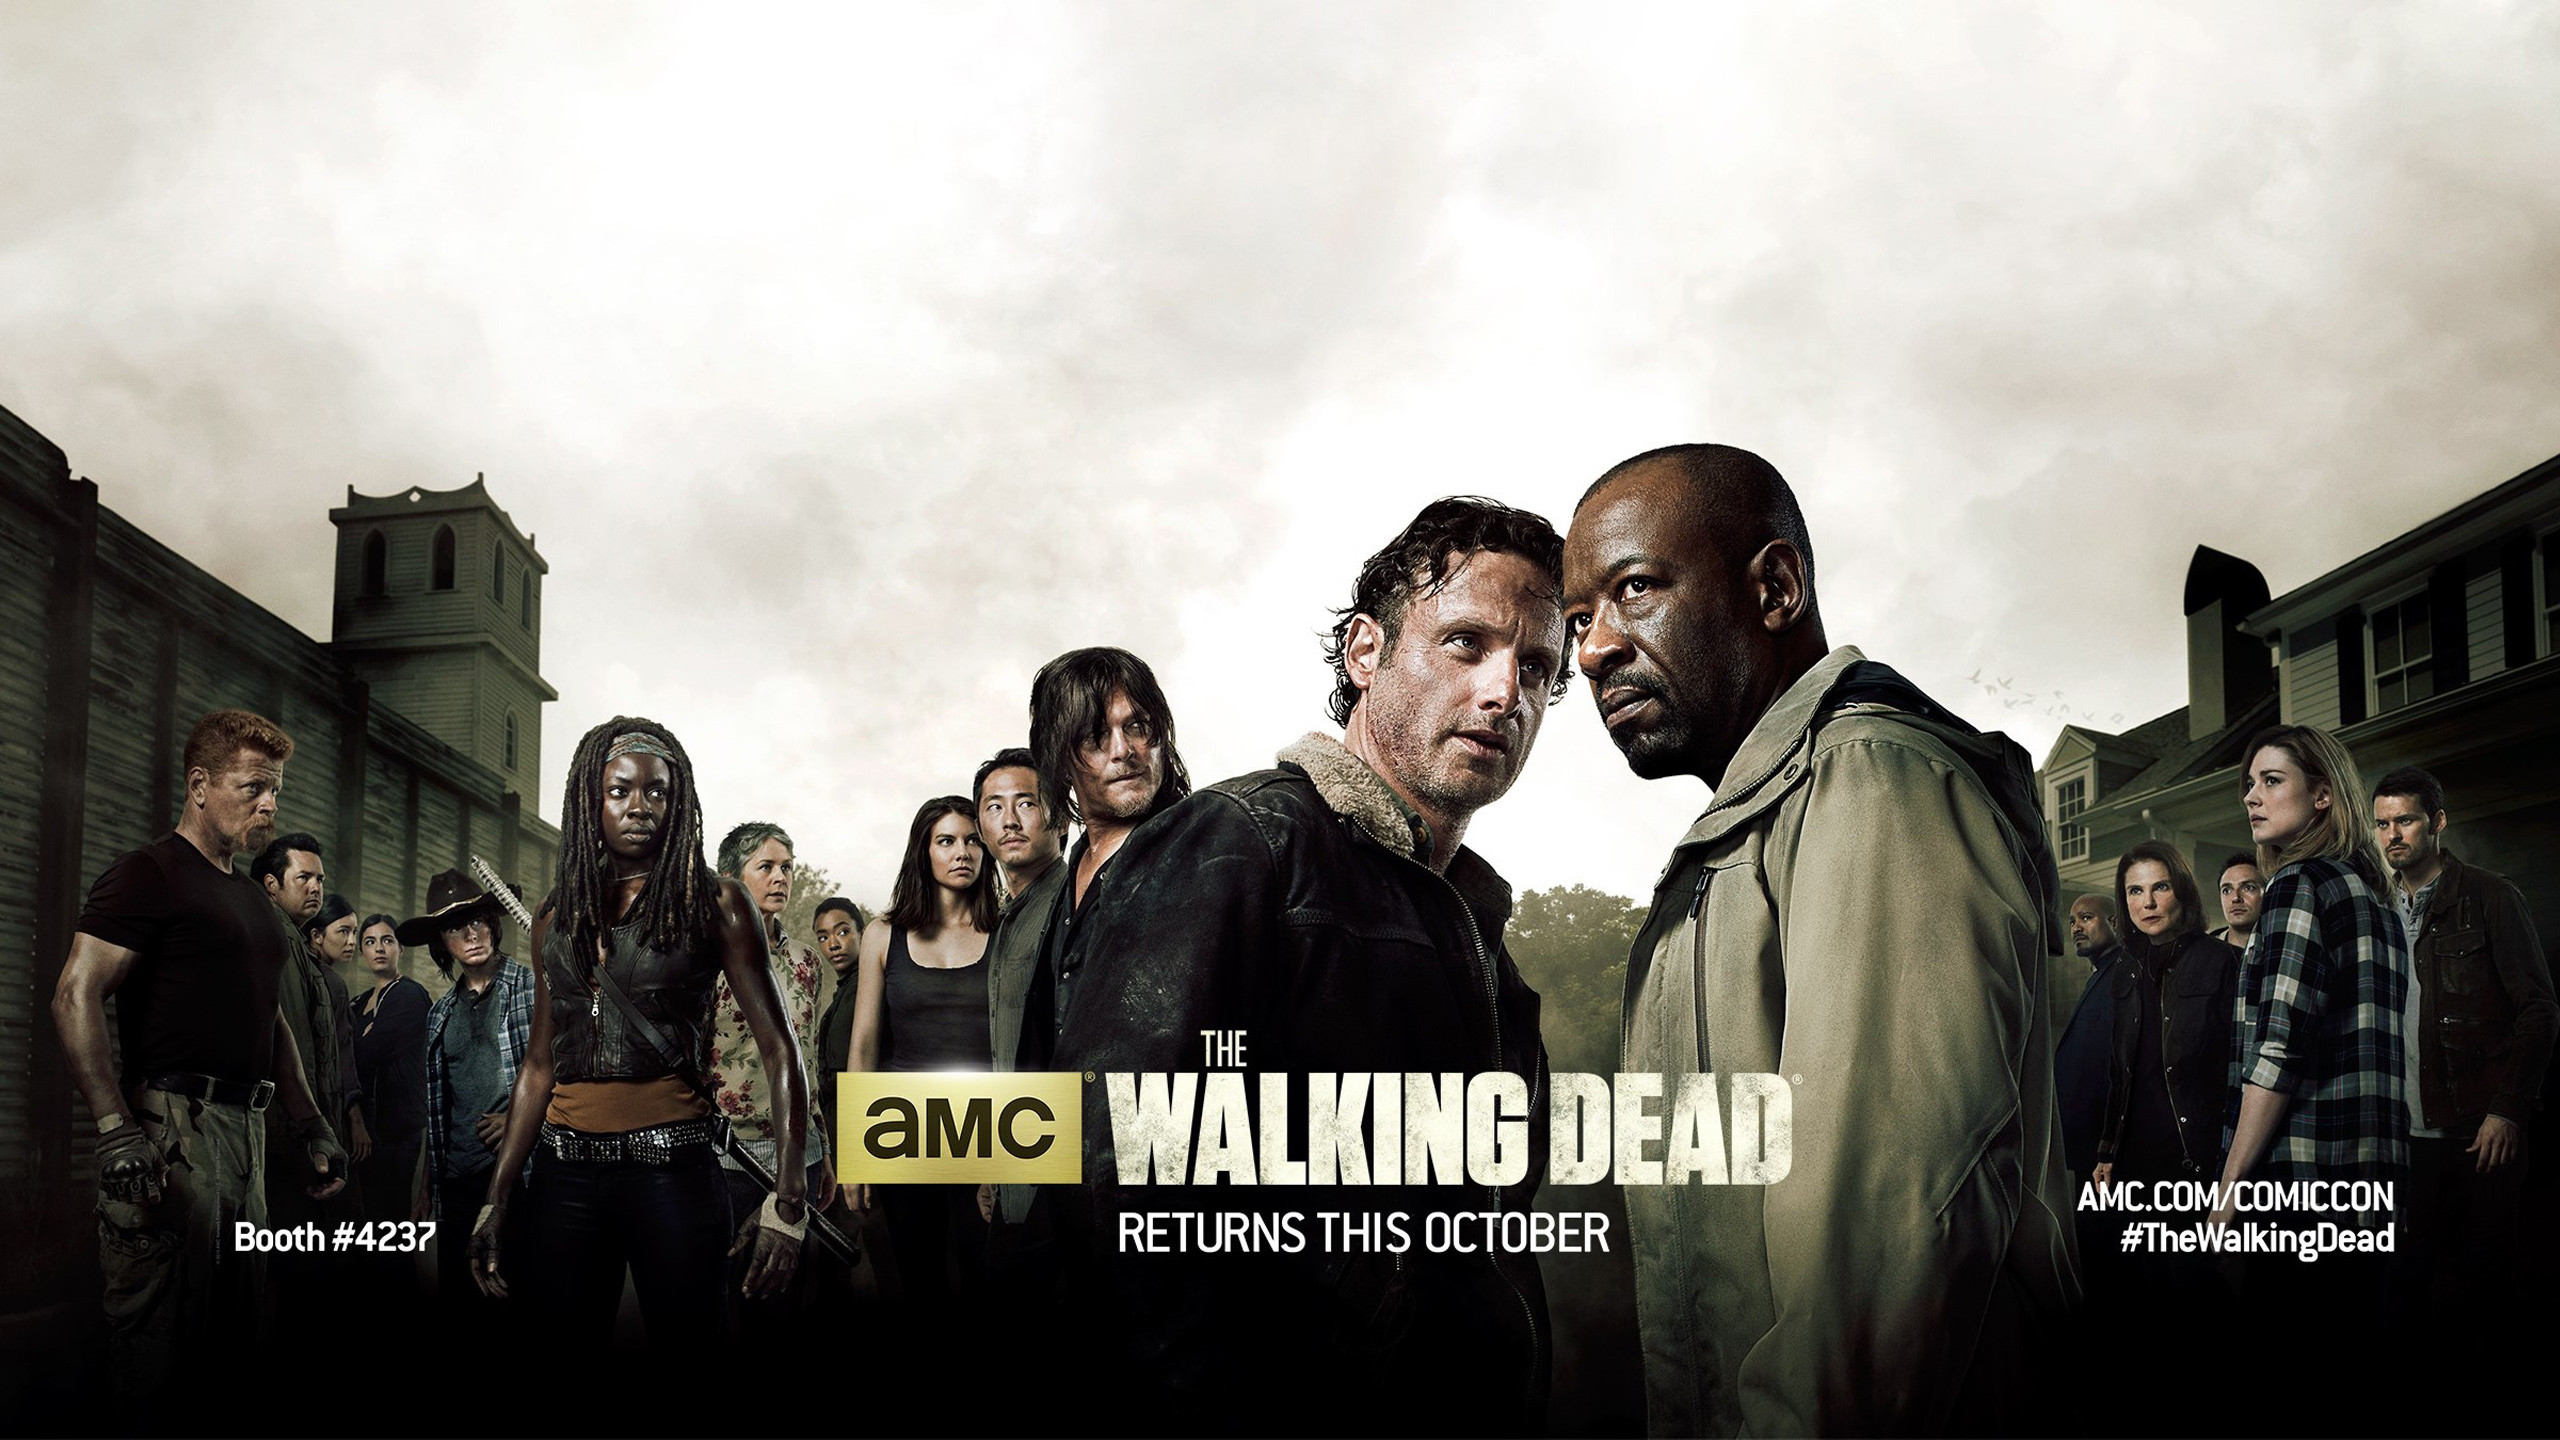 The Walking Dead Season 6 Wallpapers Hd Wallpapers - Walking Dead Season 6 - HD Wallpaper 